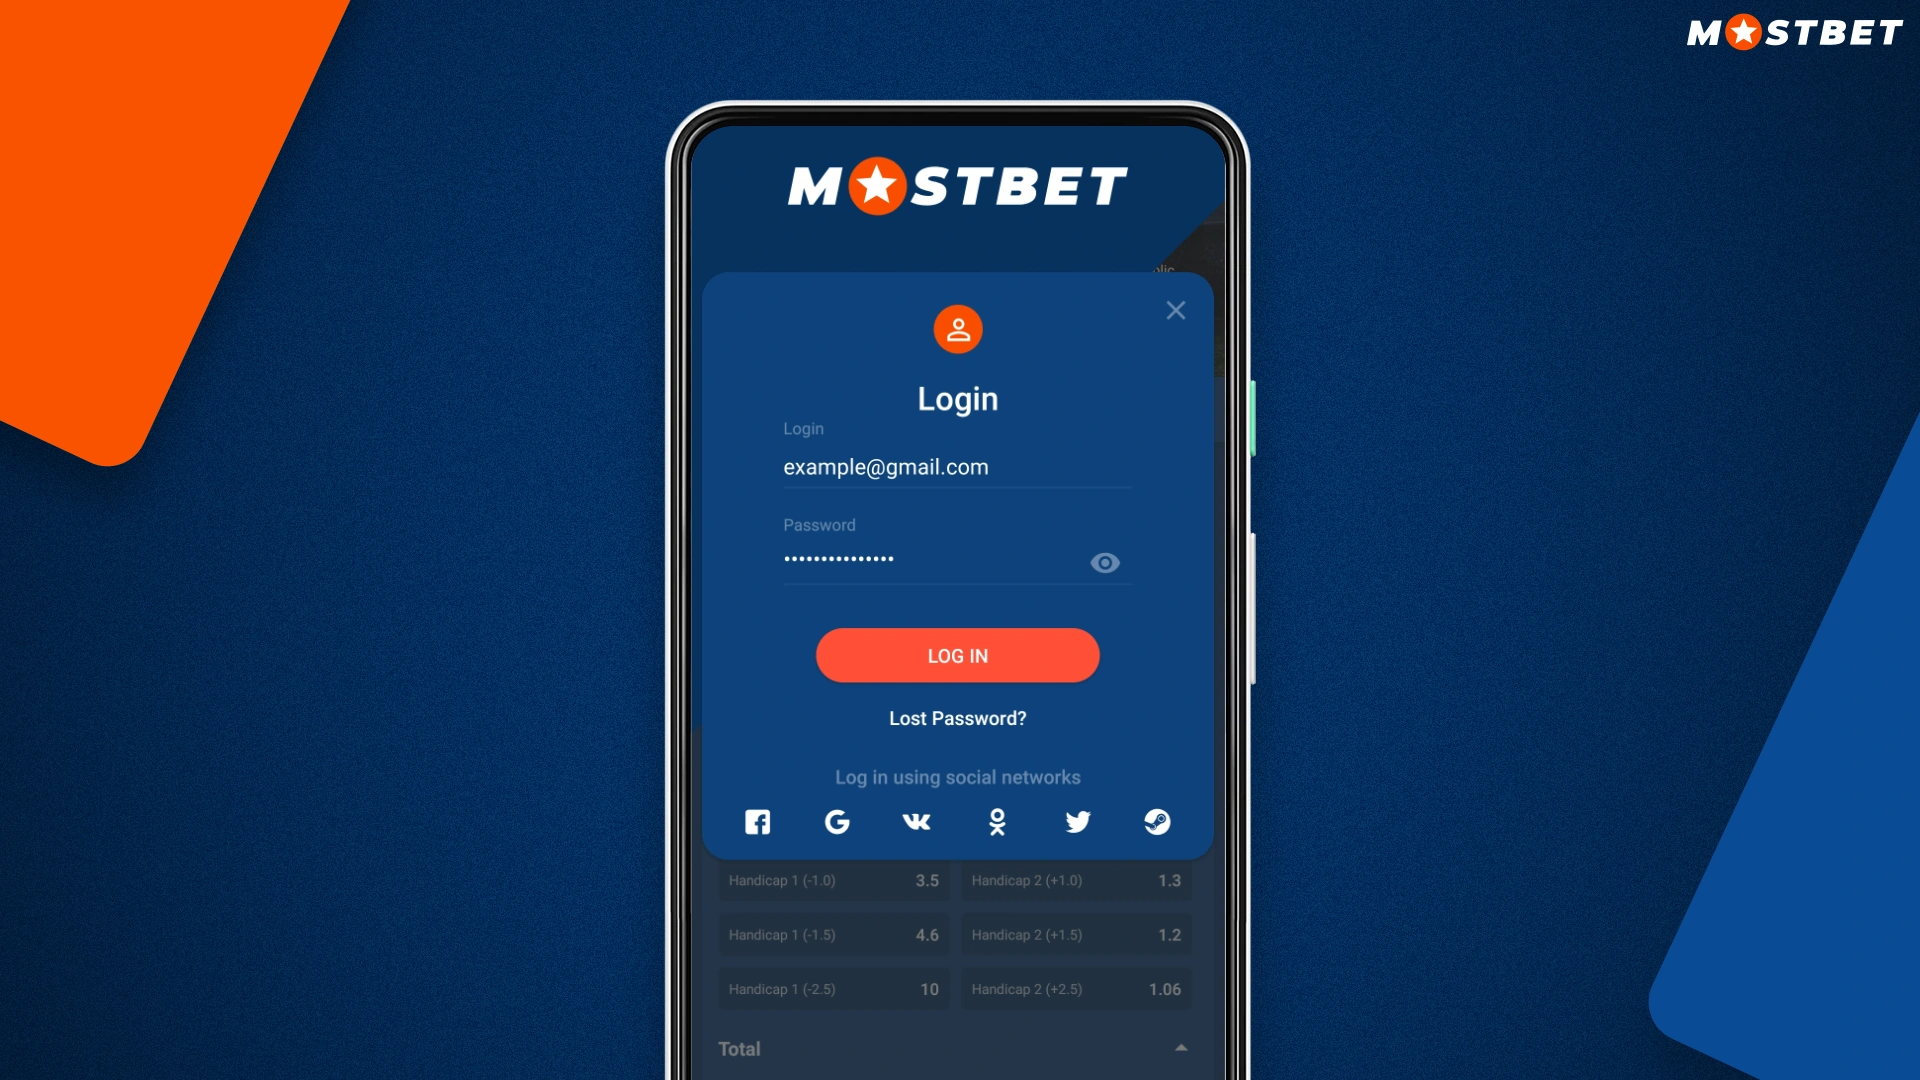 For å logge inn på kontoen din i Mostbet-appen må du bruke dataene som ble spesifisert under registreringen